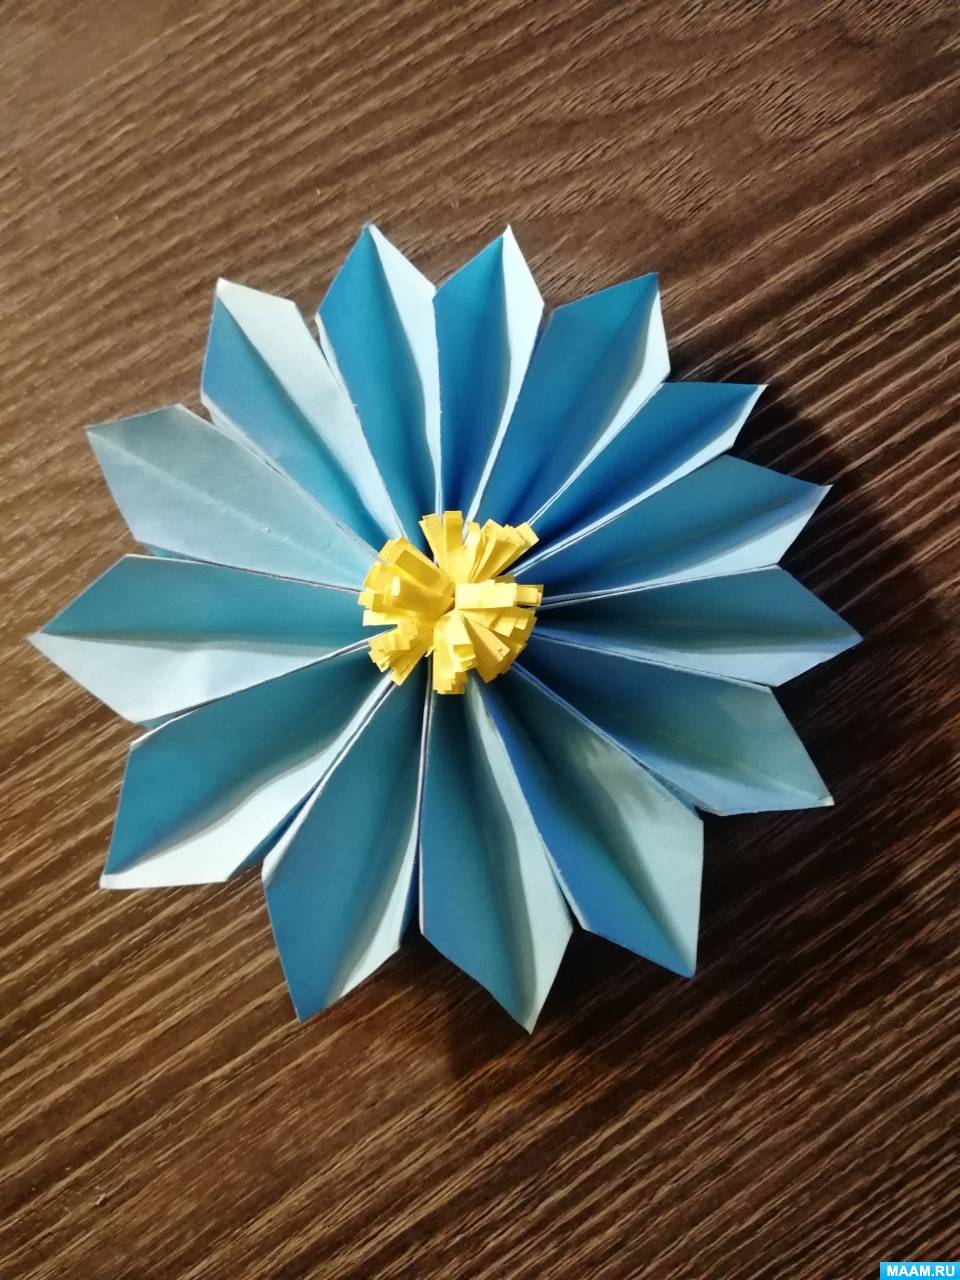 Мастер-класс по изготовлению поделки «Объемный цветок» из бумаги с использованием оригами и квиллинга